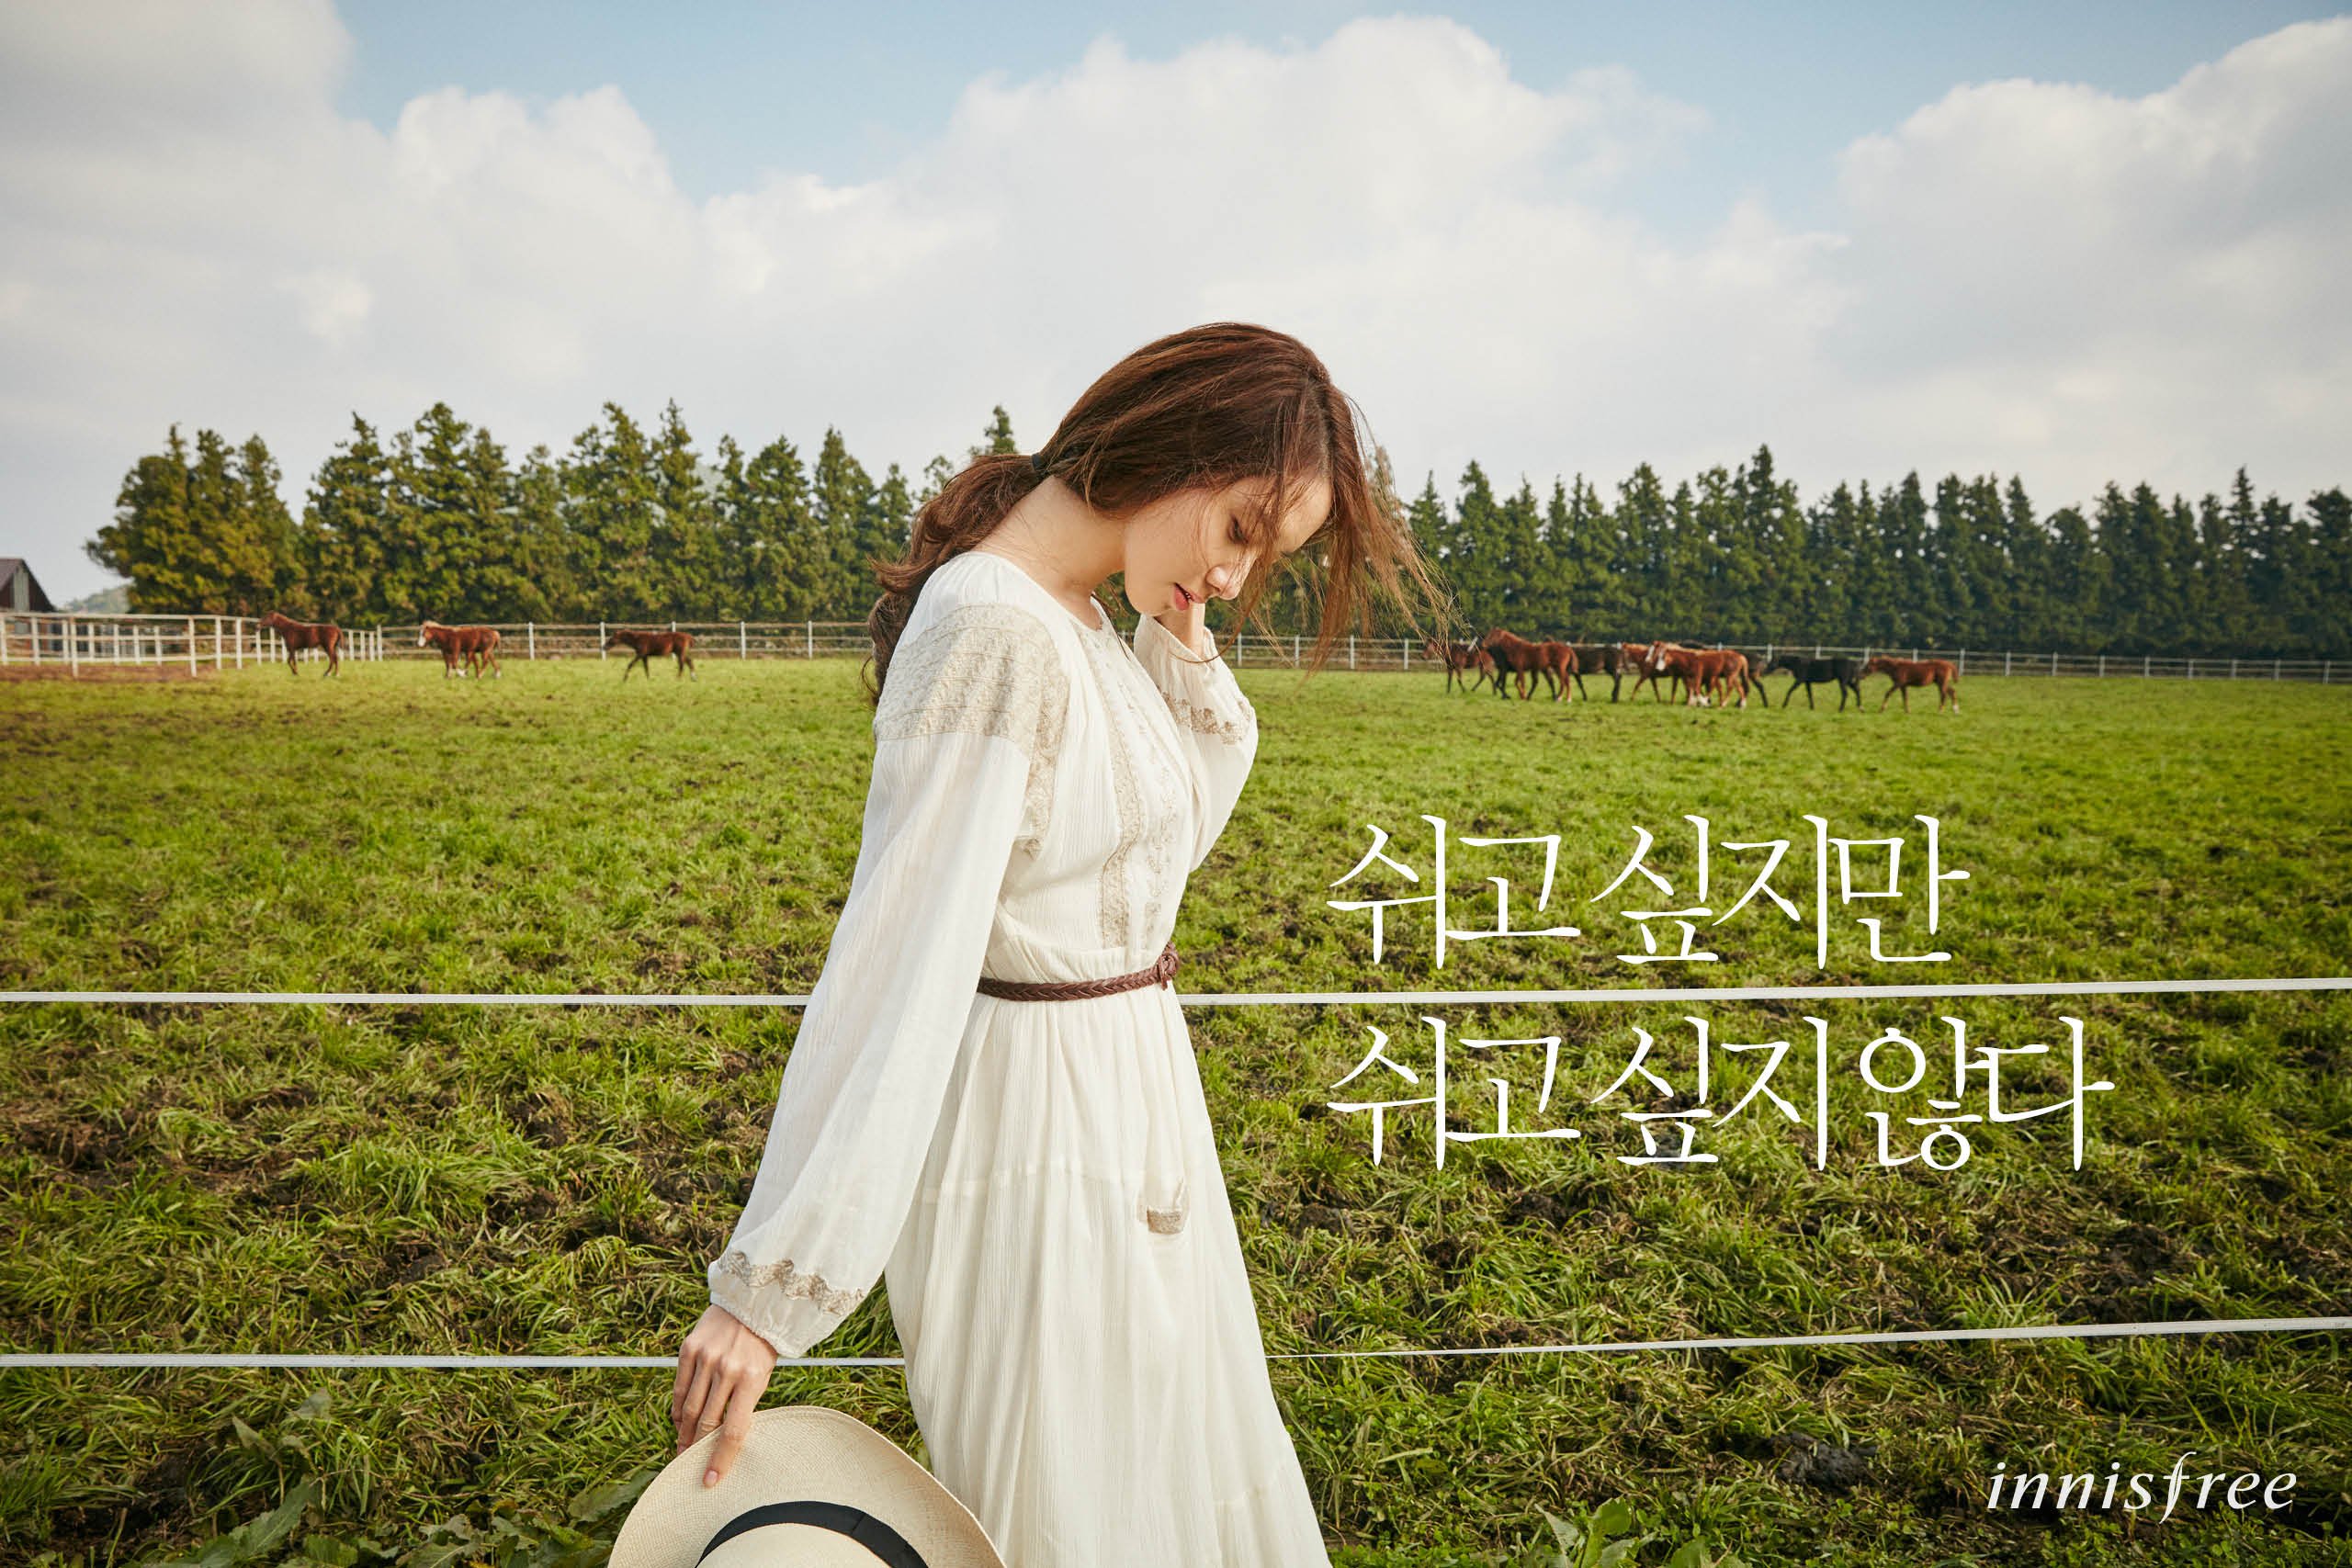 [OTHER][21-07-2012]Hình ảnh mới nhất từ thương hiệu "Innisfree" của YoonA - Page 14 FIFU_SNKBT-3000x3000